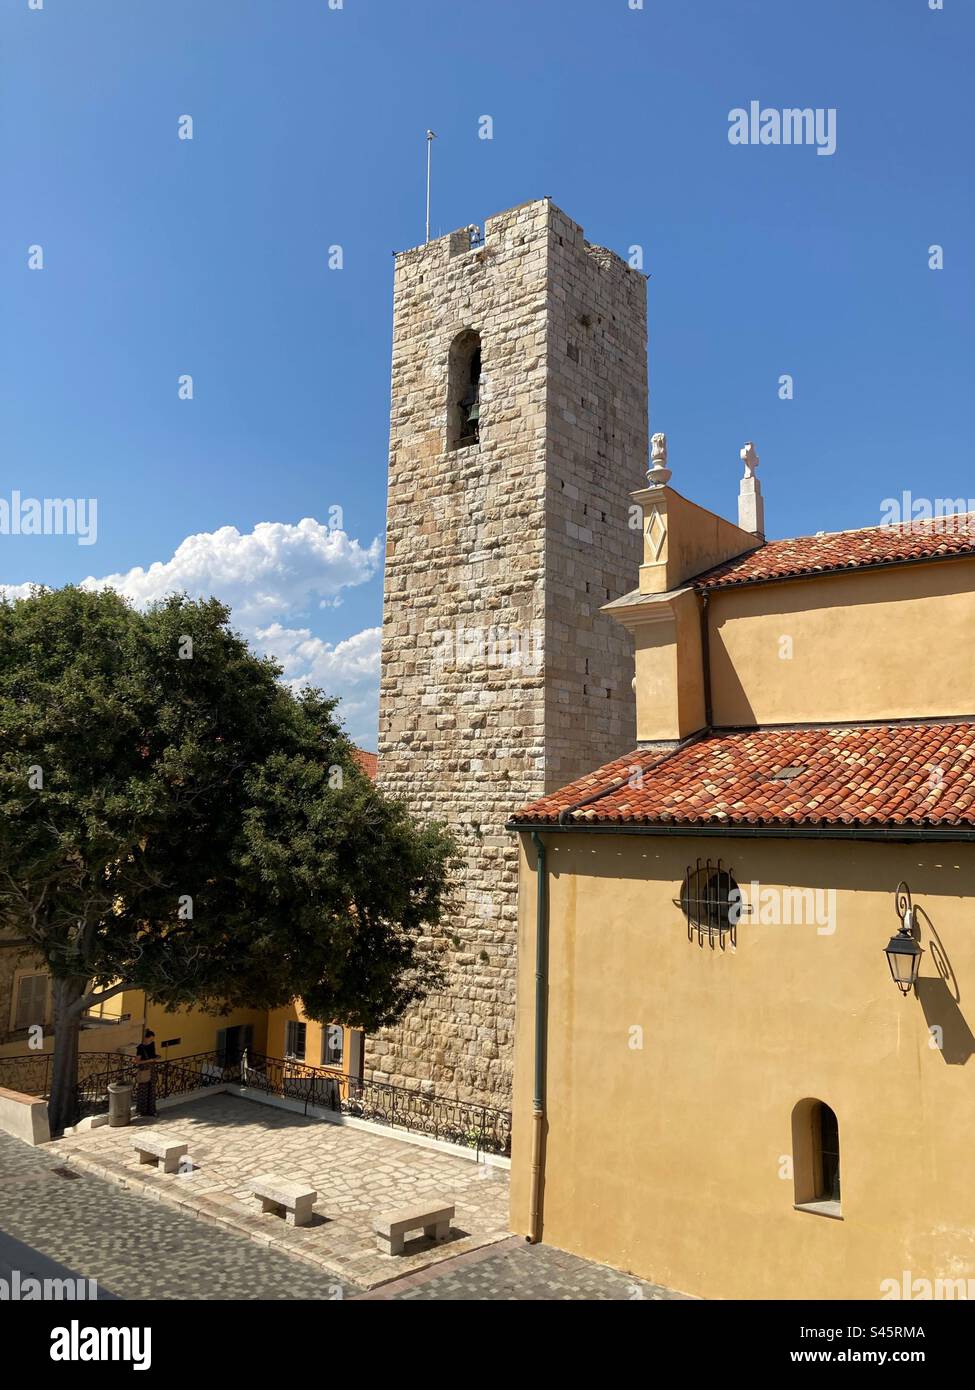 Cathédrale d'Antibes (Cathédrale notre-Dame-de-l'Immaculée-conception d'Antibes) et la Tour Grimaldi vue du Musée Picasso, Antibes, Provence, France Banque D'Images